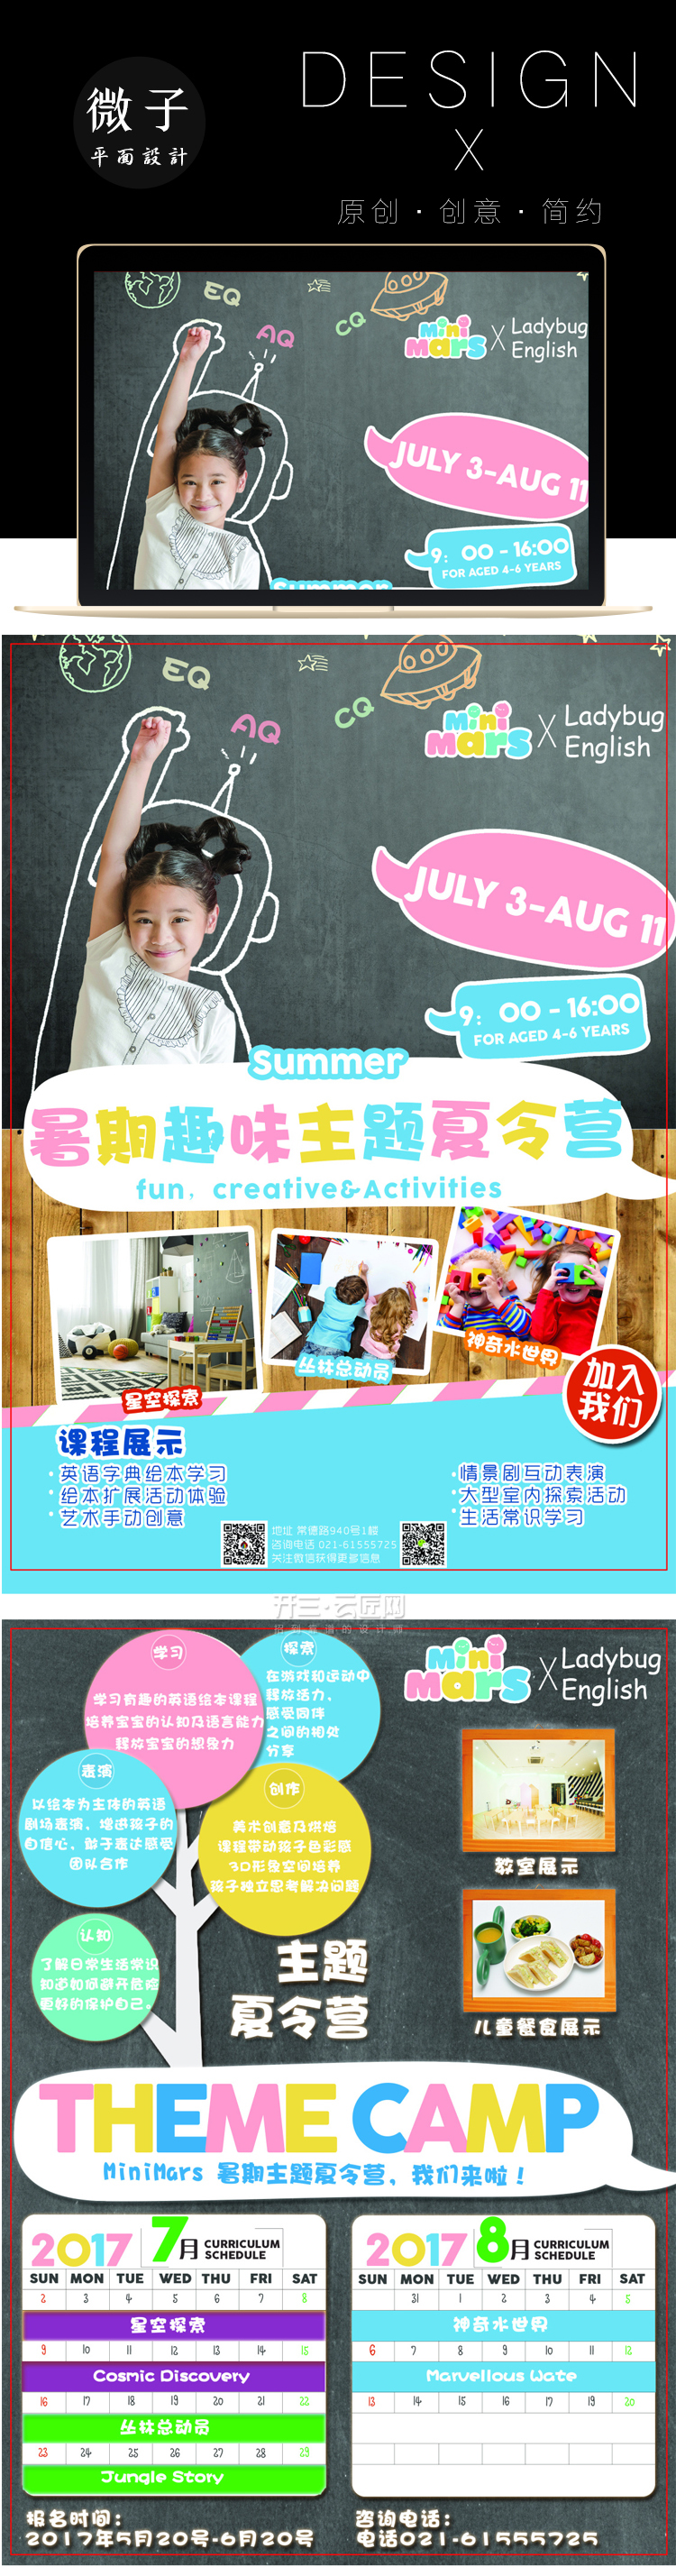 淘宝美工微子儿童暑假班DM设计单页设计平面宣传页作品